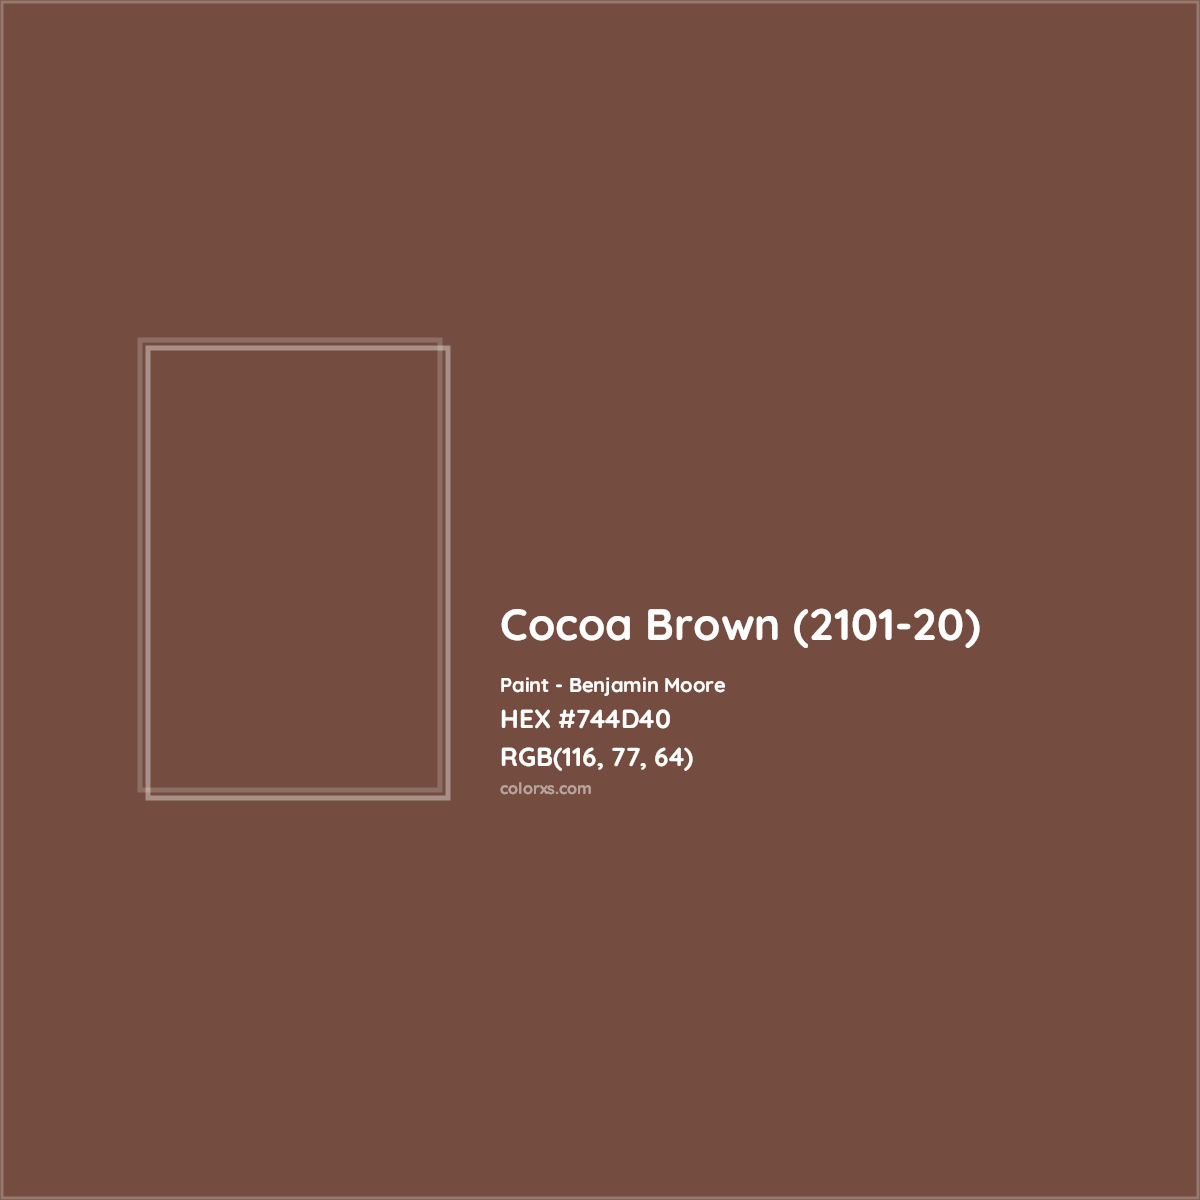 HEX #744D40 Cocoa Brown (2101-20) Paint Benjamin Moore - Color Code